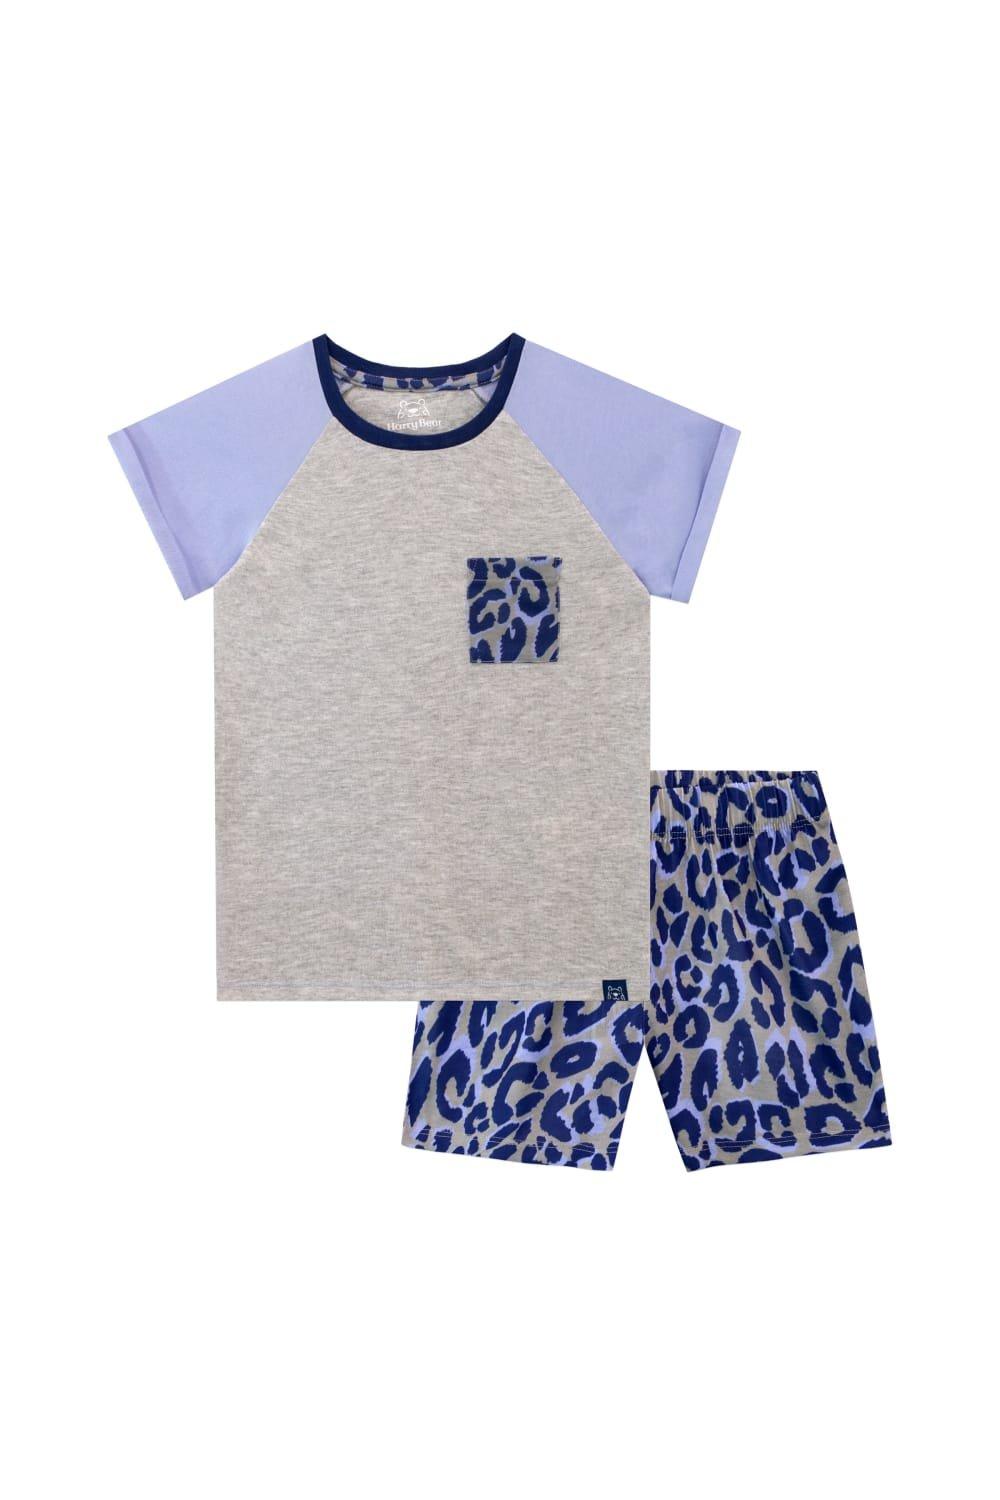 Leopard Print Short Pyjamas